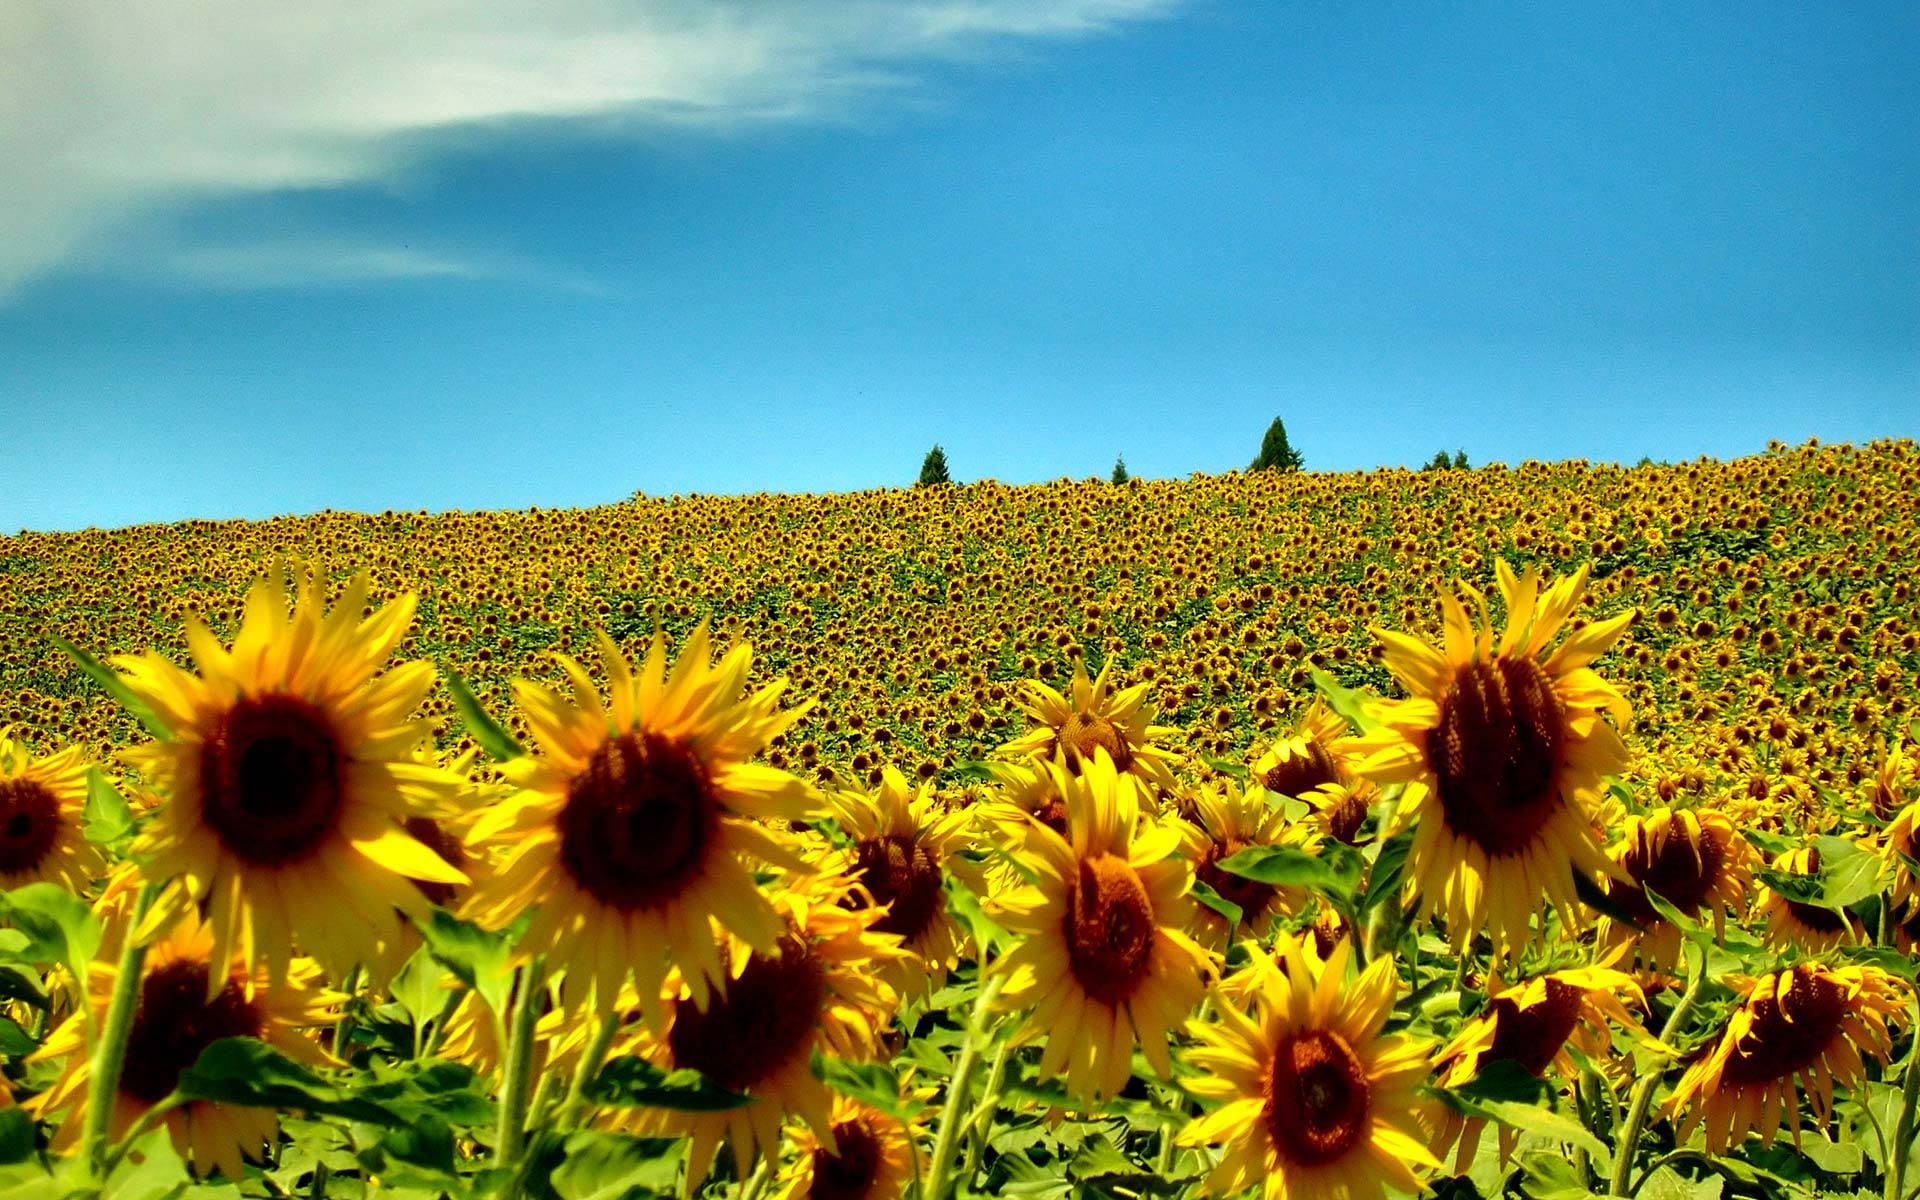 Immagini con splendidi paesaggi estivi. 100 fotografie da decorare il tuo desktop